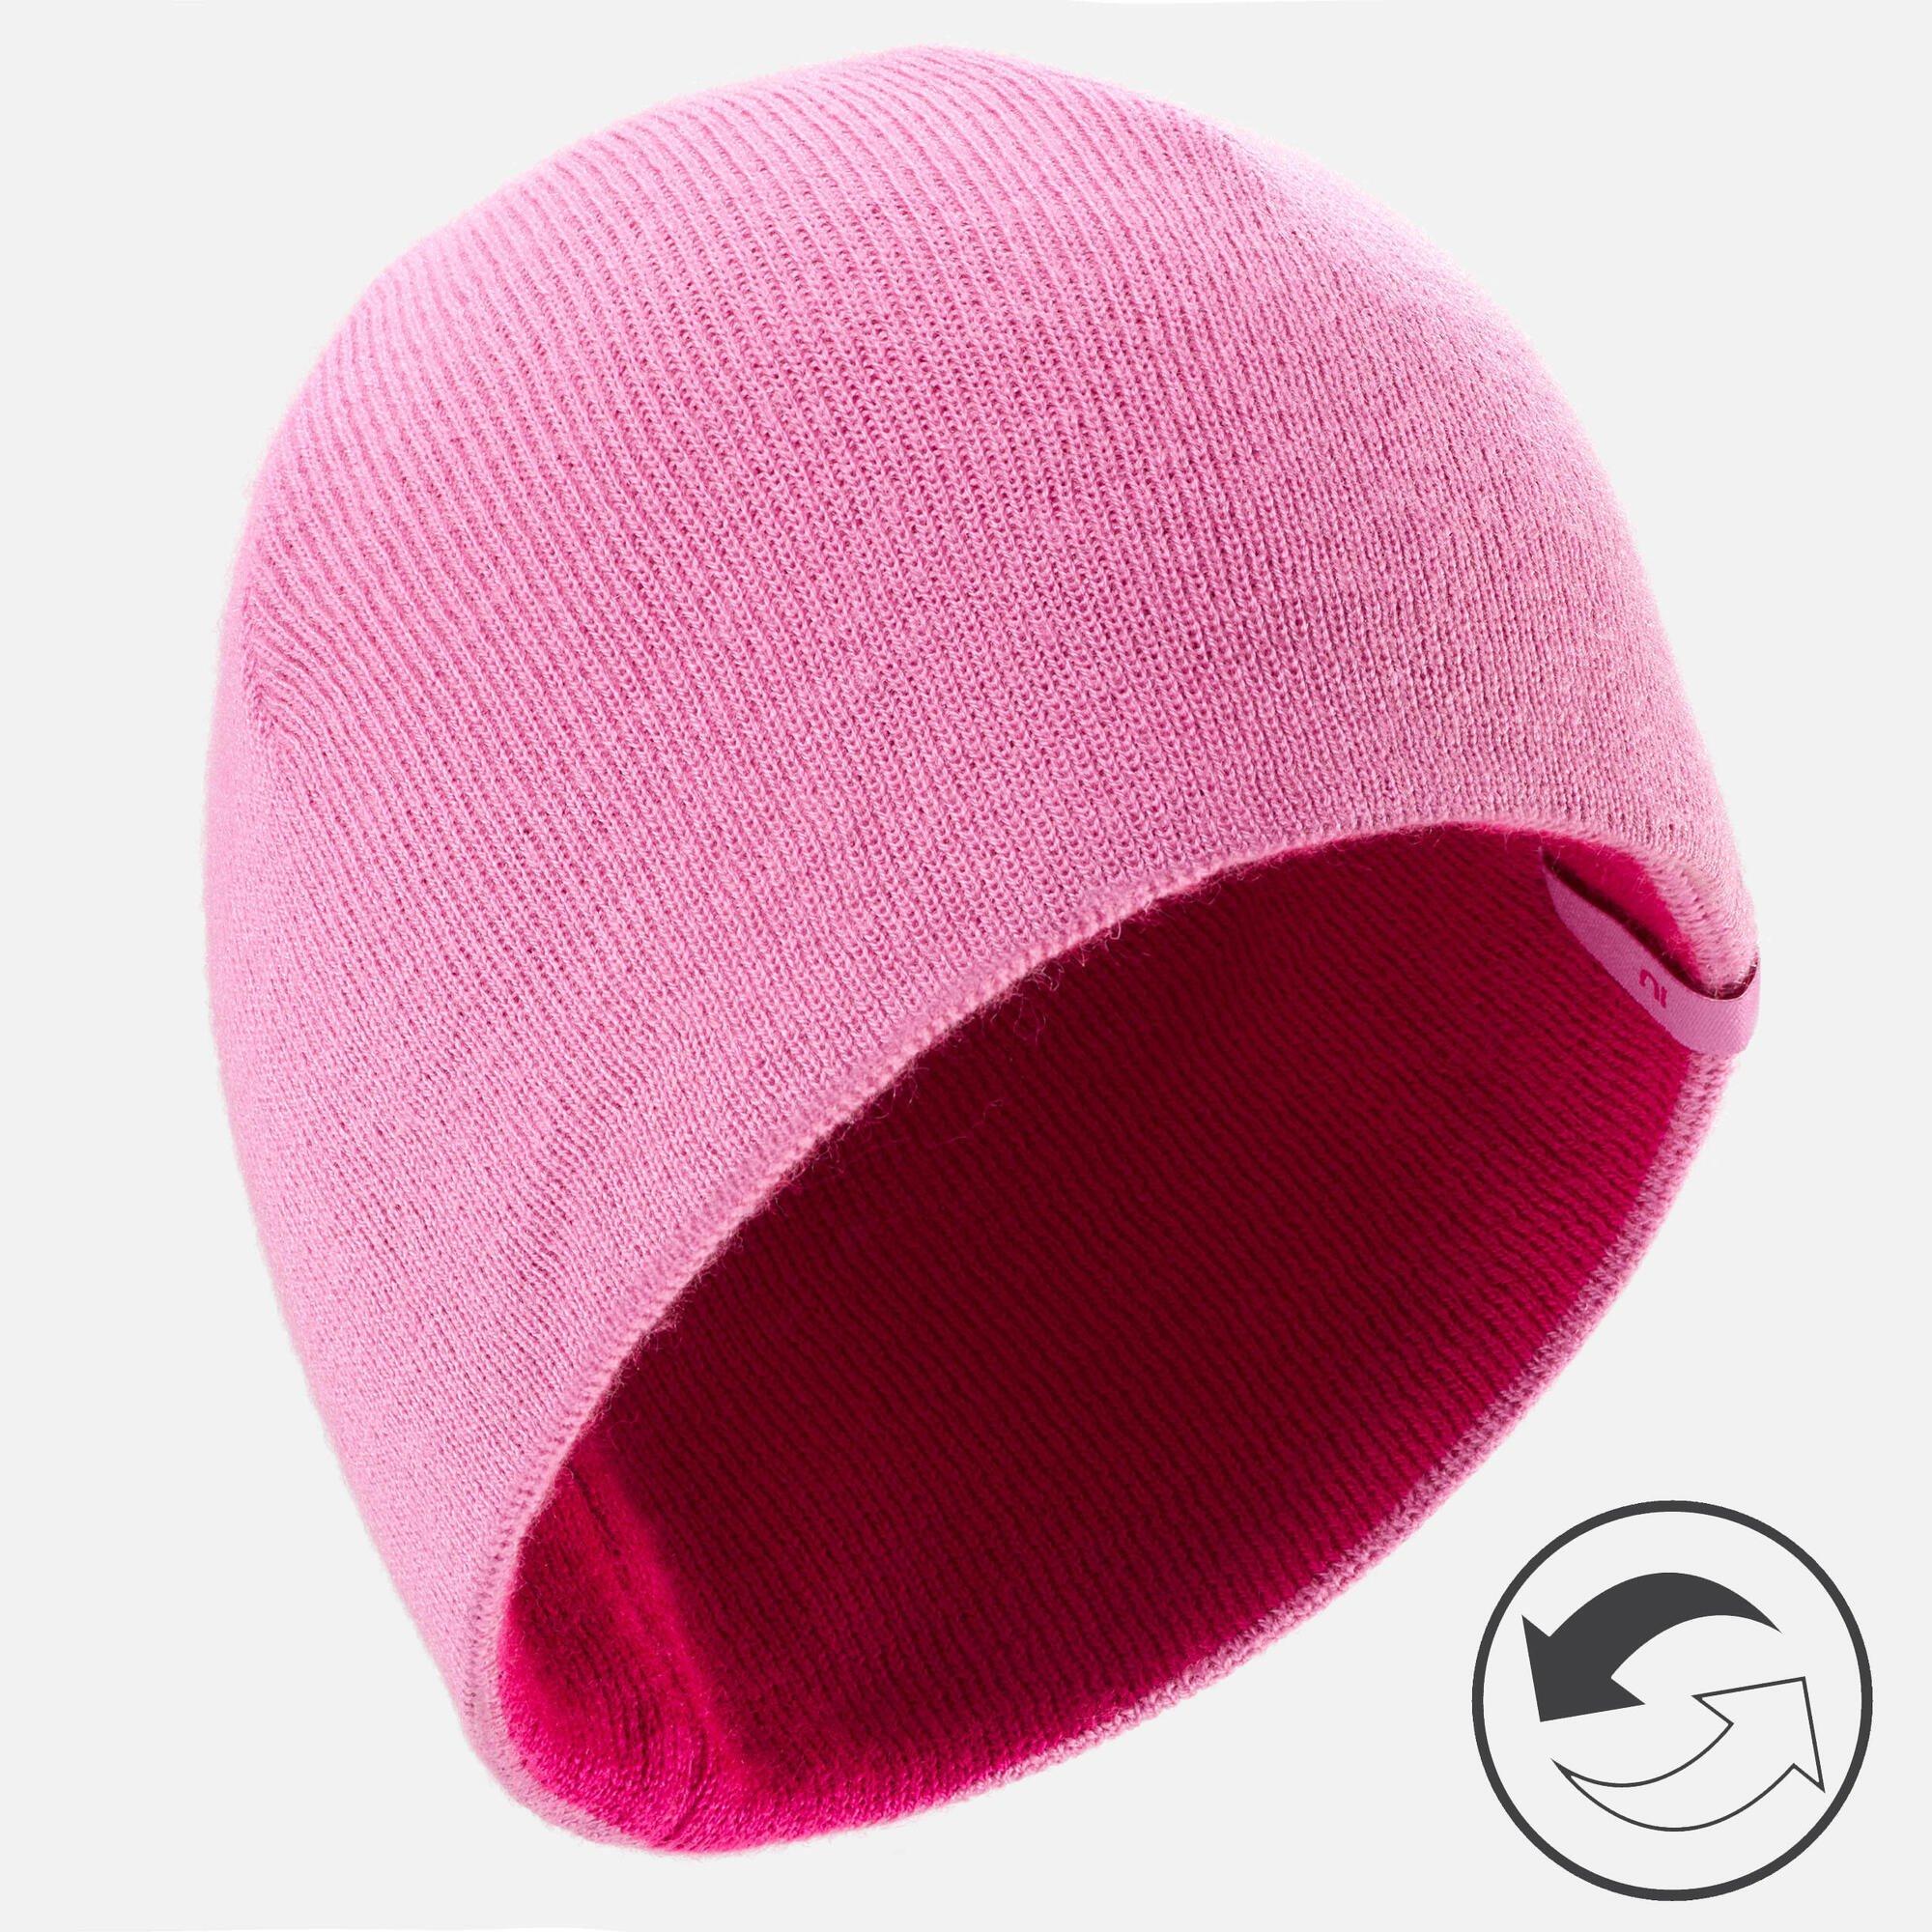 Лыжная шапка Decathlon, реверс, цвет Camel Wedze, розовый